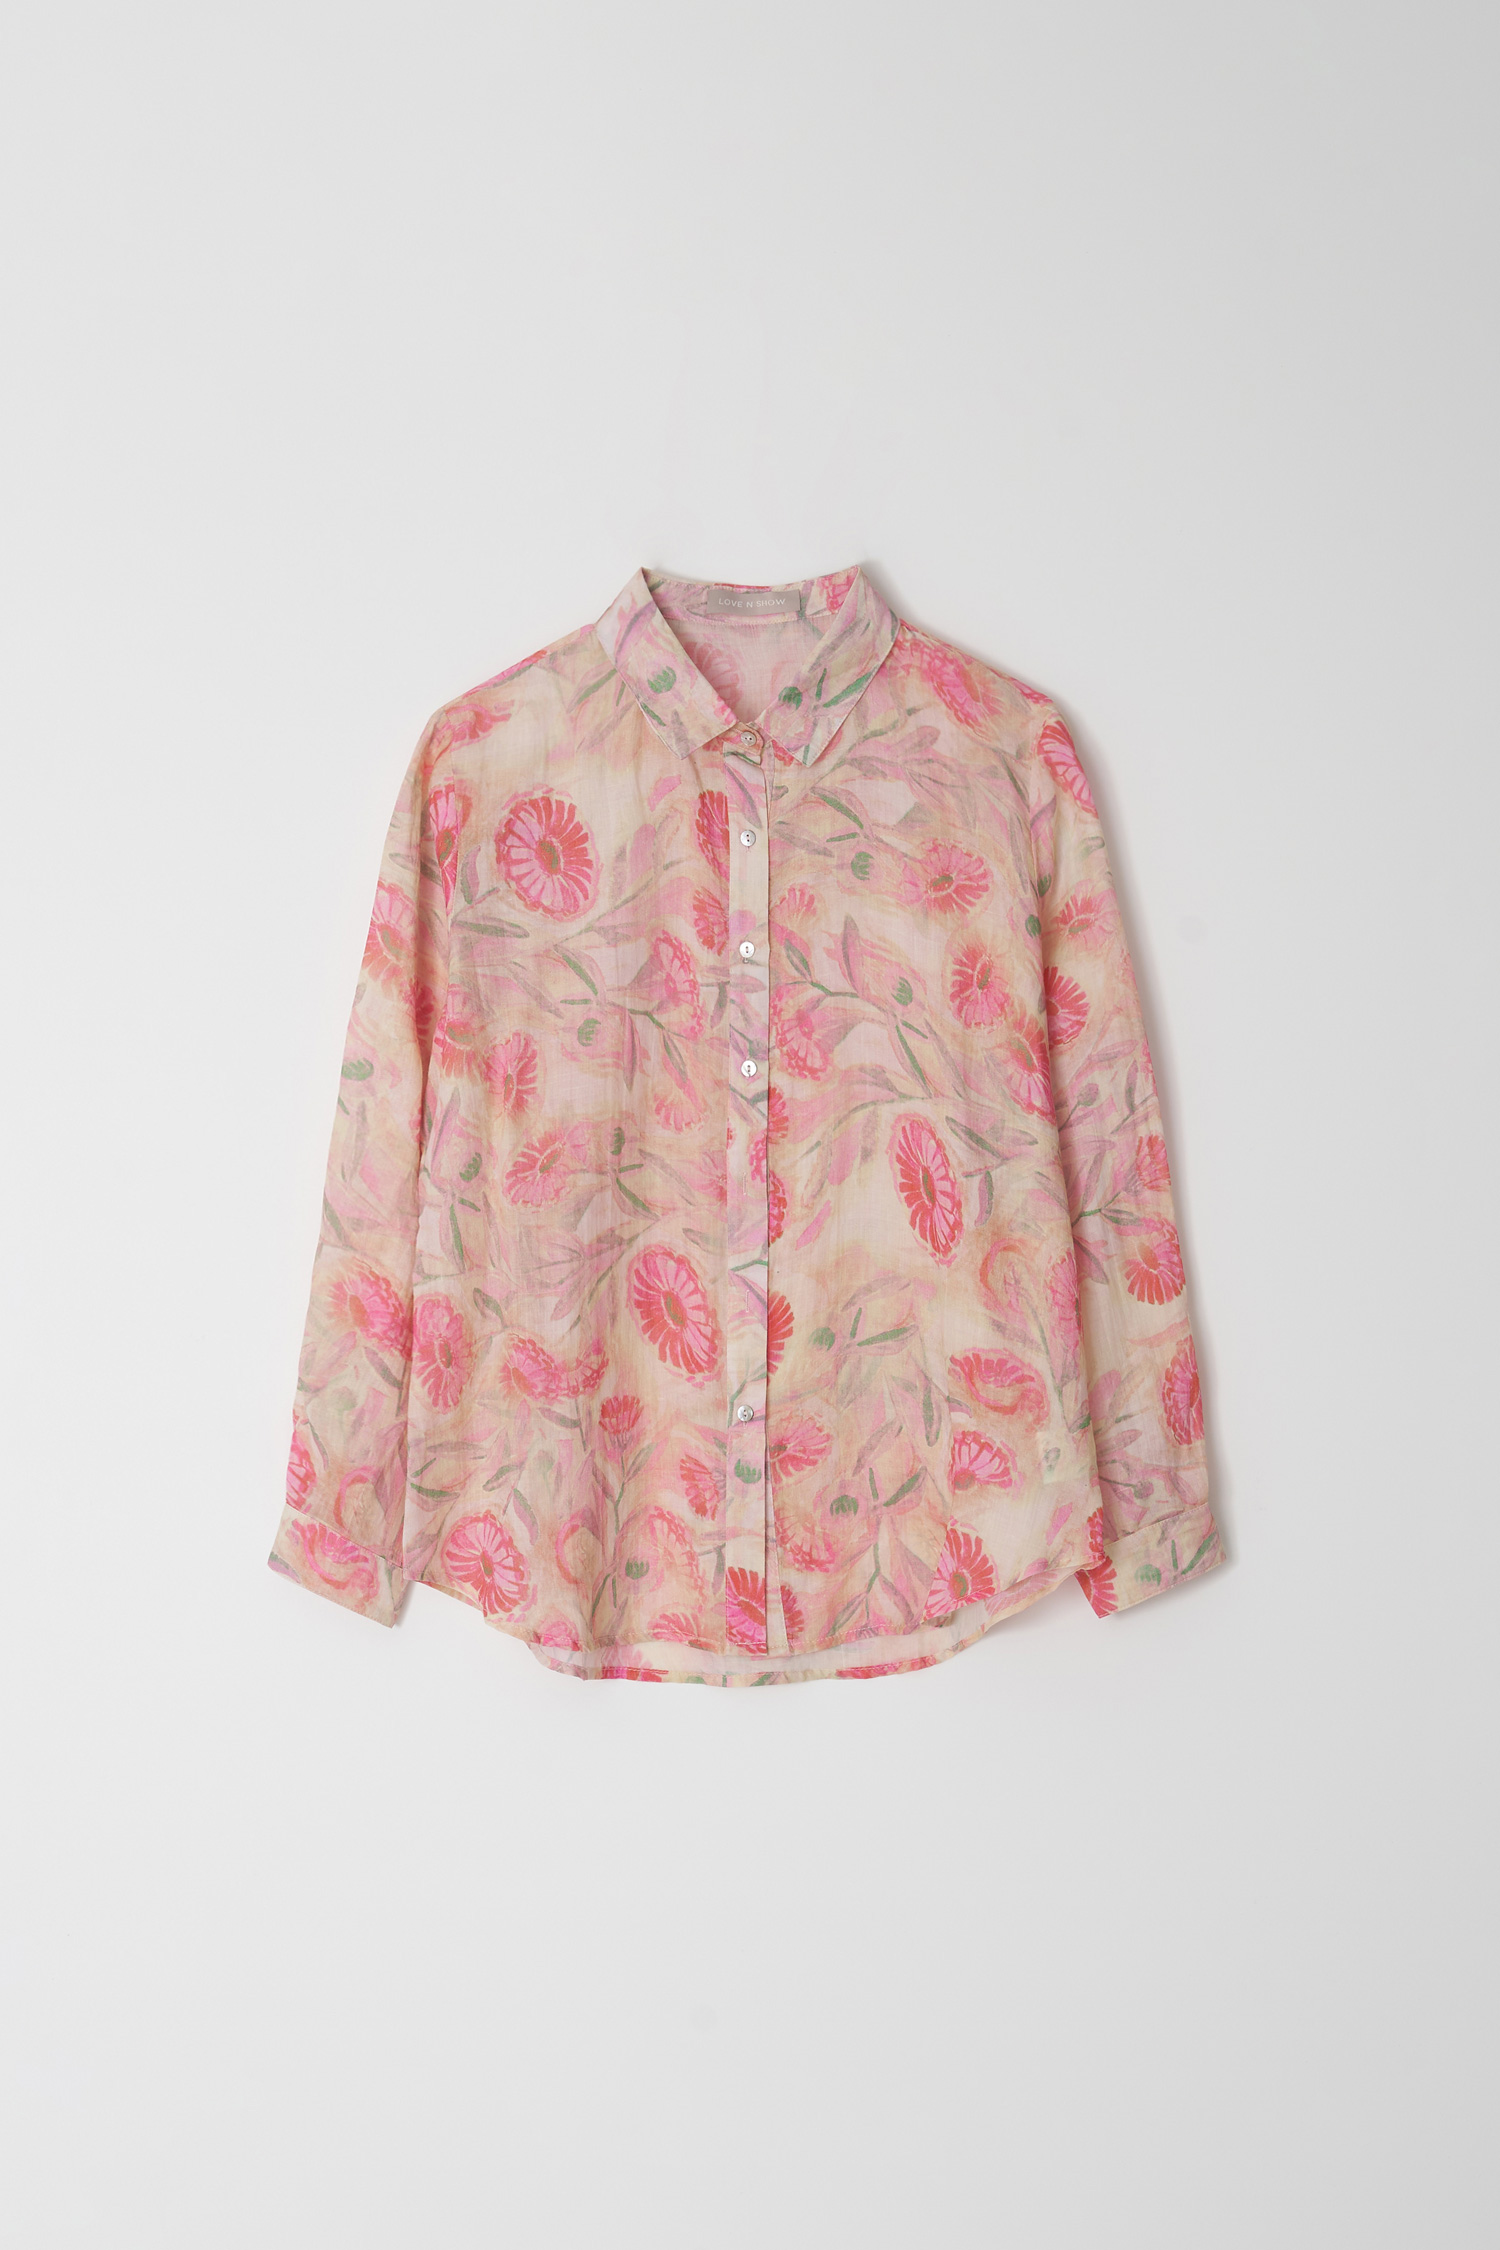 Flower linen printed shirt